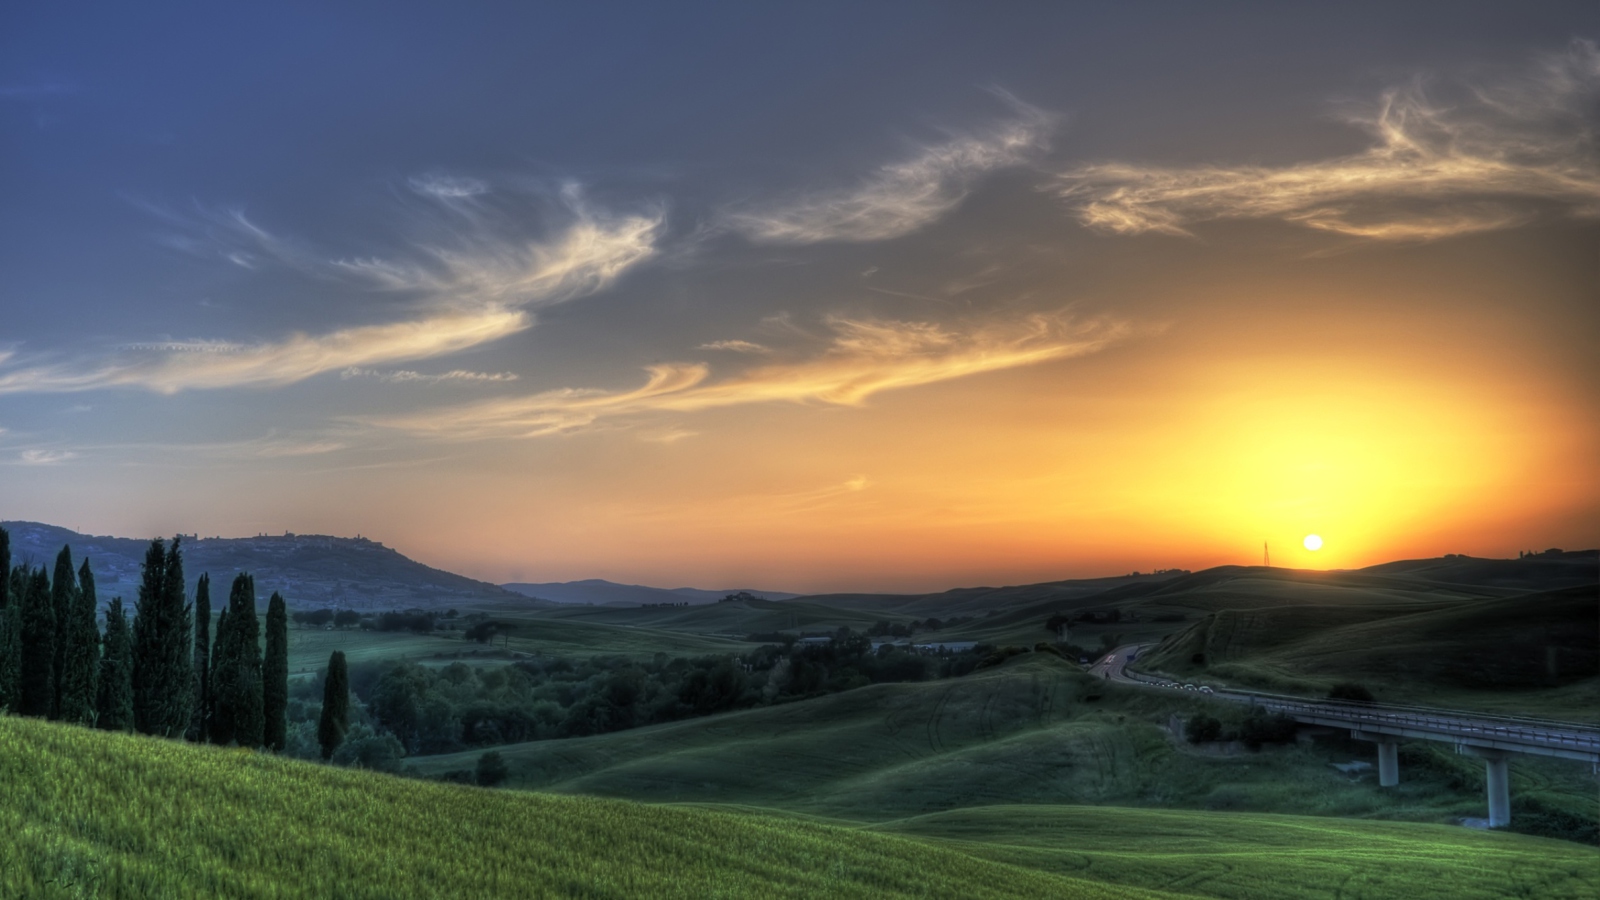 Sfondi Sunset In Tuscany 1600x900